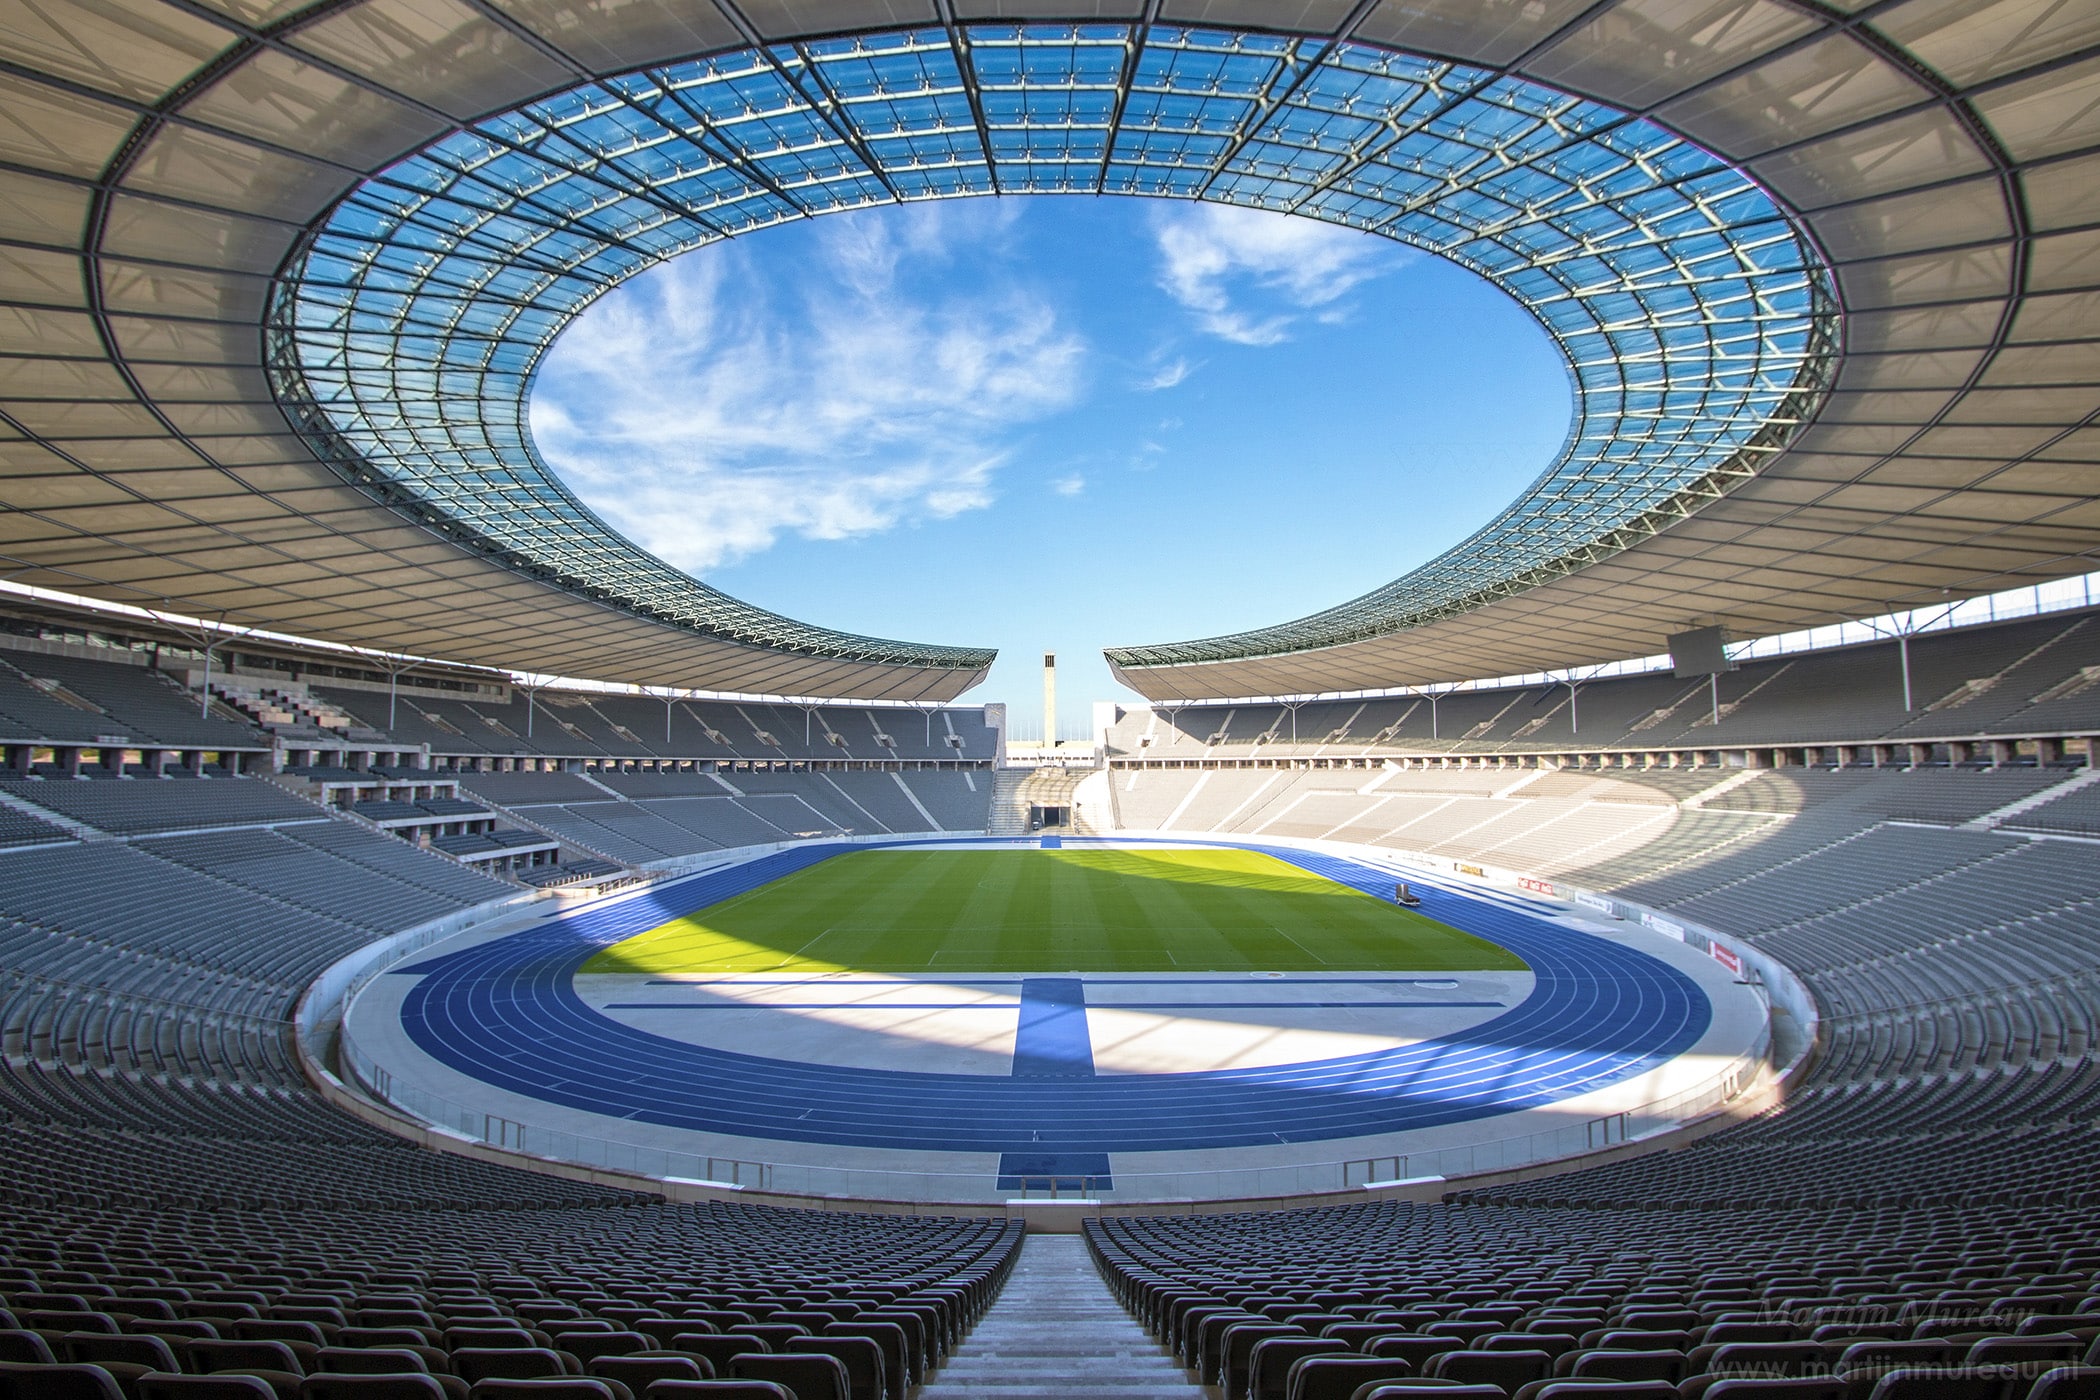 Das Olympiastadion bietet Platz für über 74.000 Besucher. Foto: Martijn Mureau, CC BY-SA 4.0 , via Wikimedia Commons